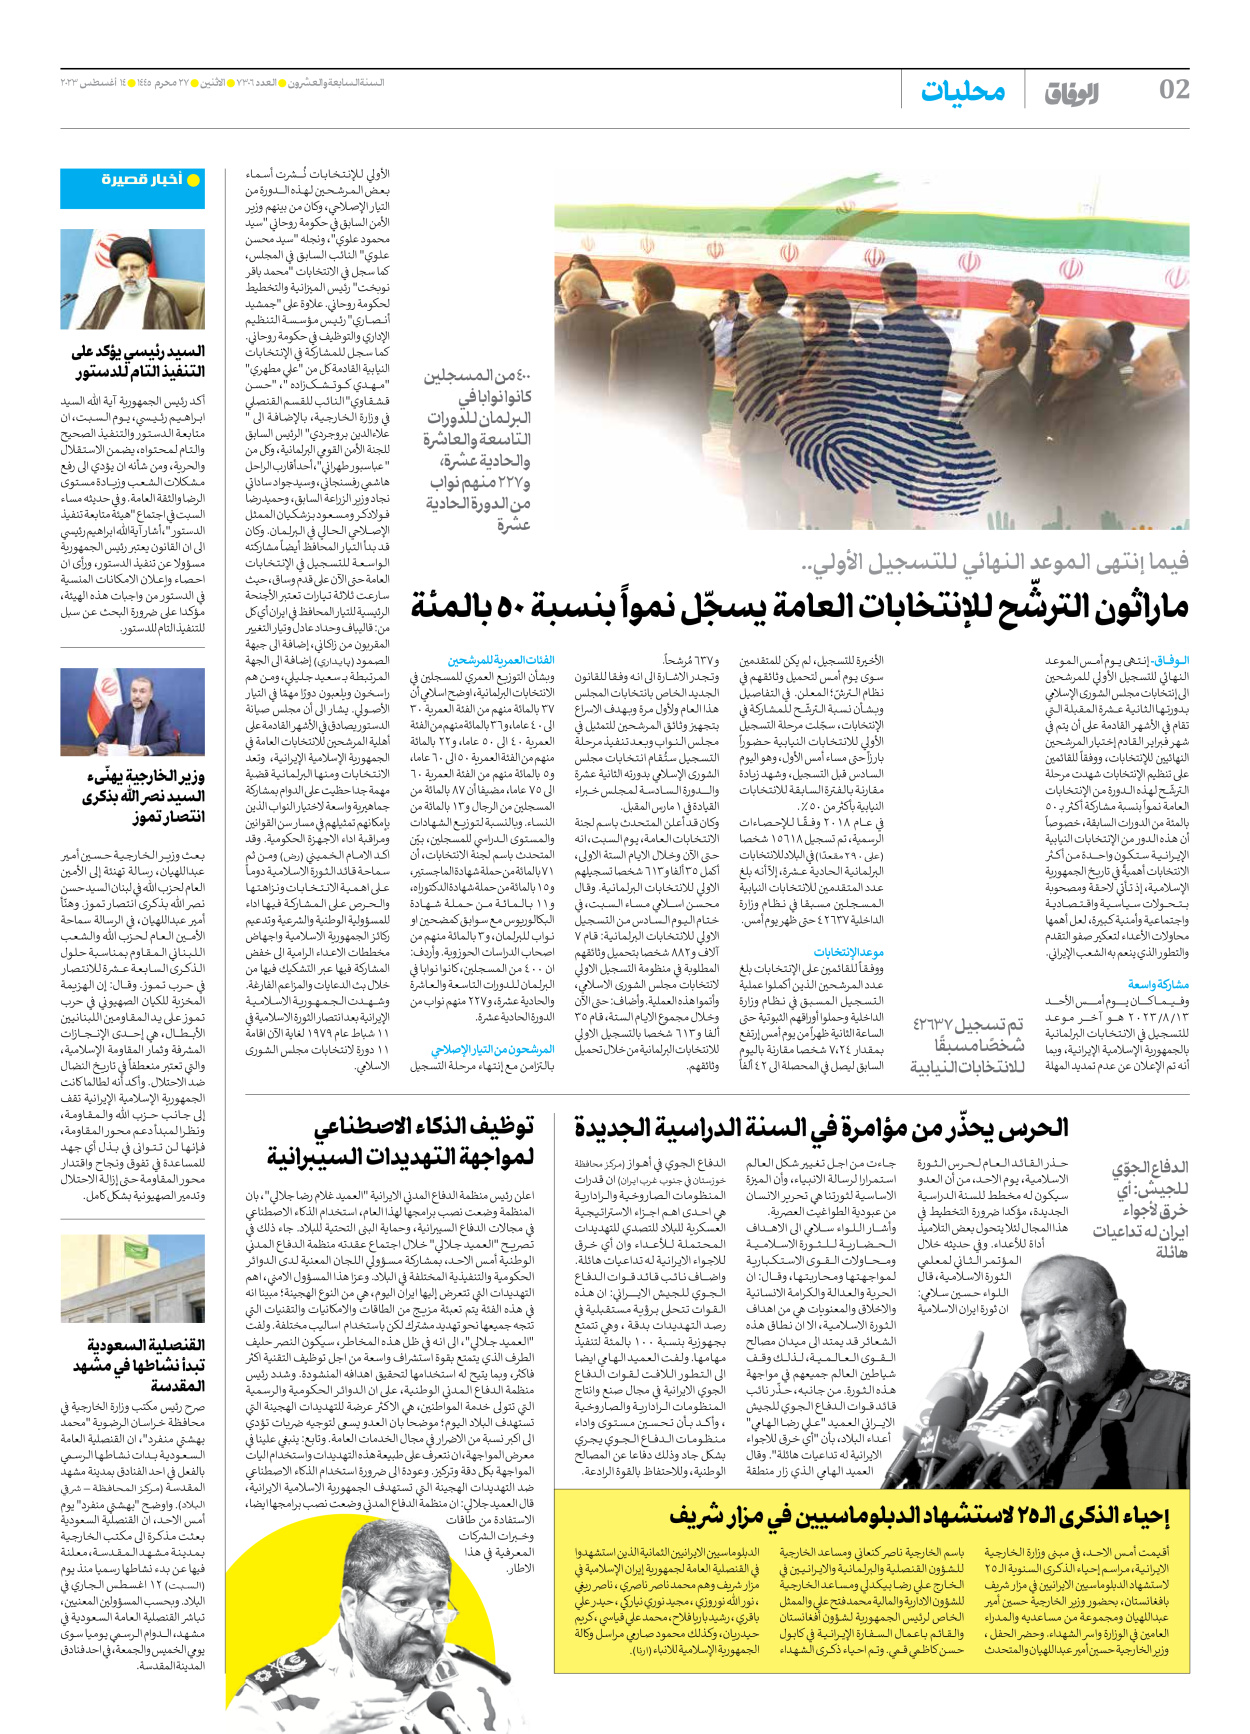 صحیفة ایران الدولیة الوفاق - العدد سبعة آلاف وثلاثمائة وستة - ١٤ أغسطس ٢٠٢٣ - الصفحة ۲